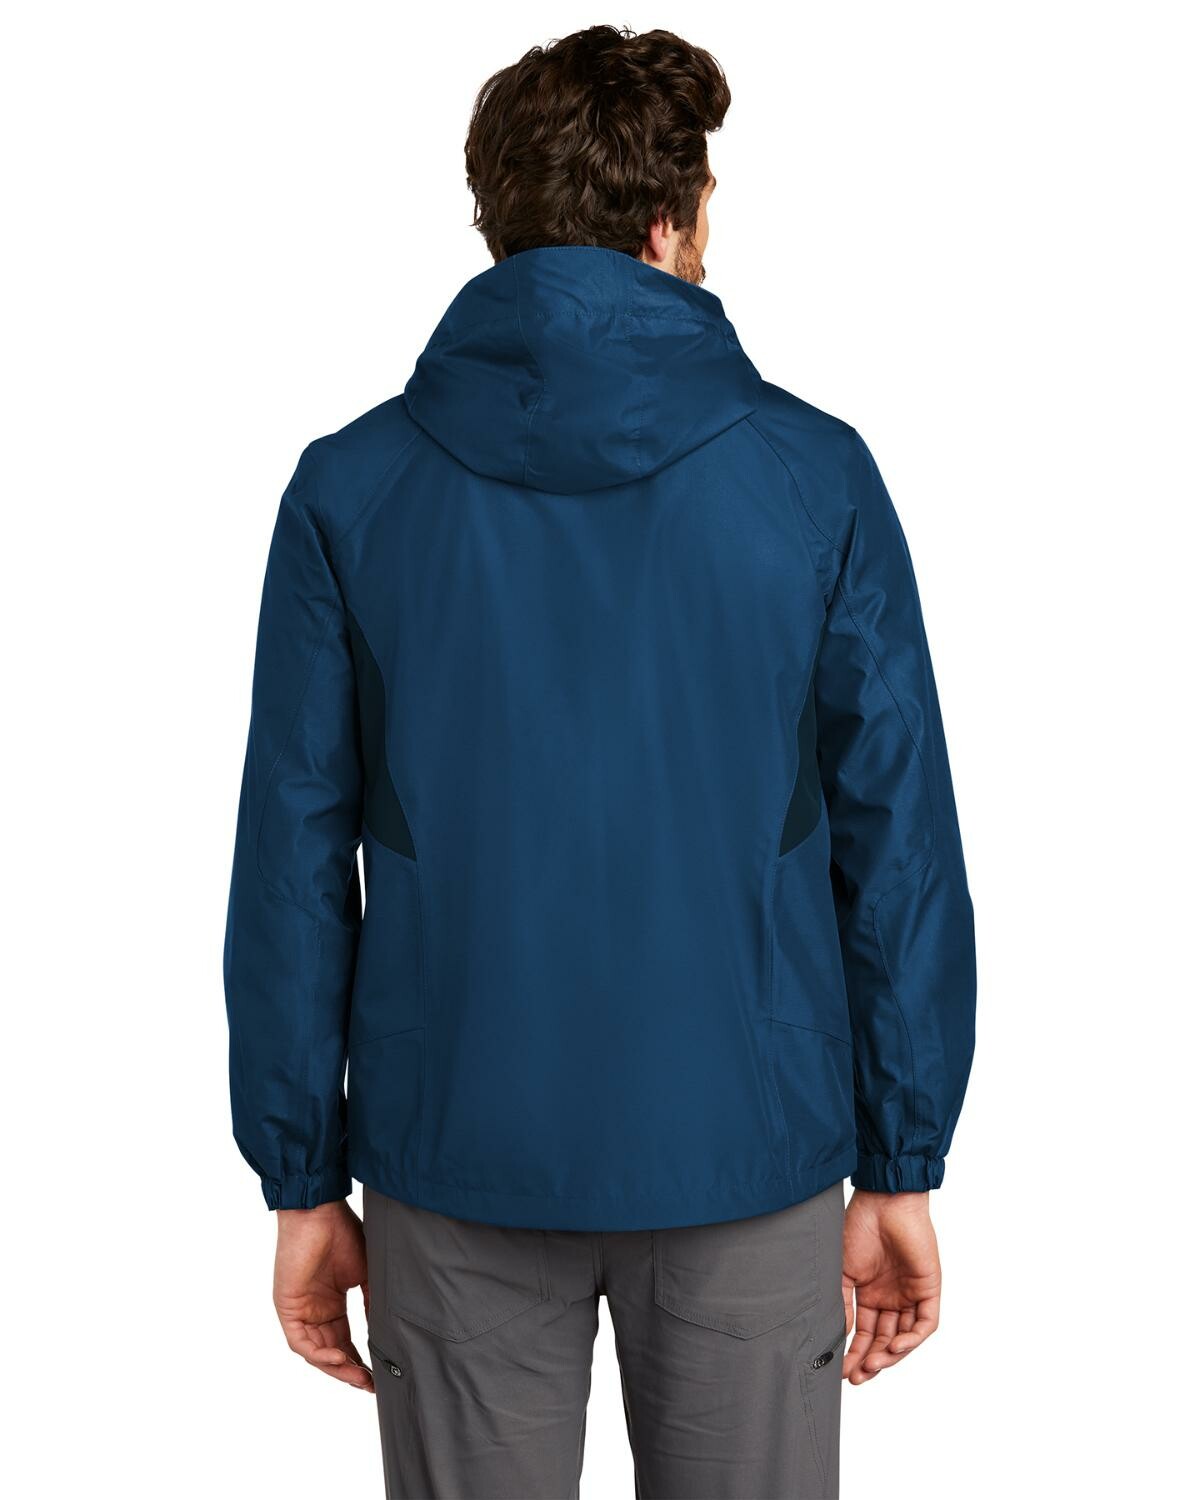 Augusta Sportswear - Clear Hooded Rain Jacket - 3160 - Clear - Size: M 